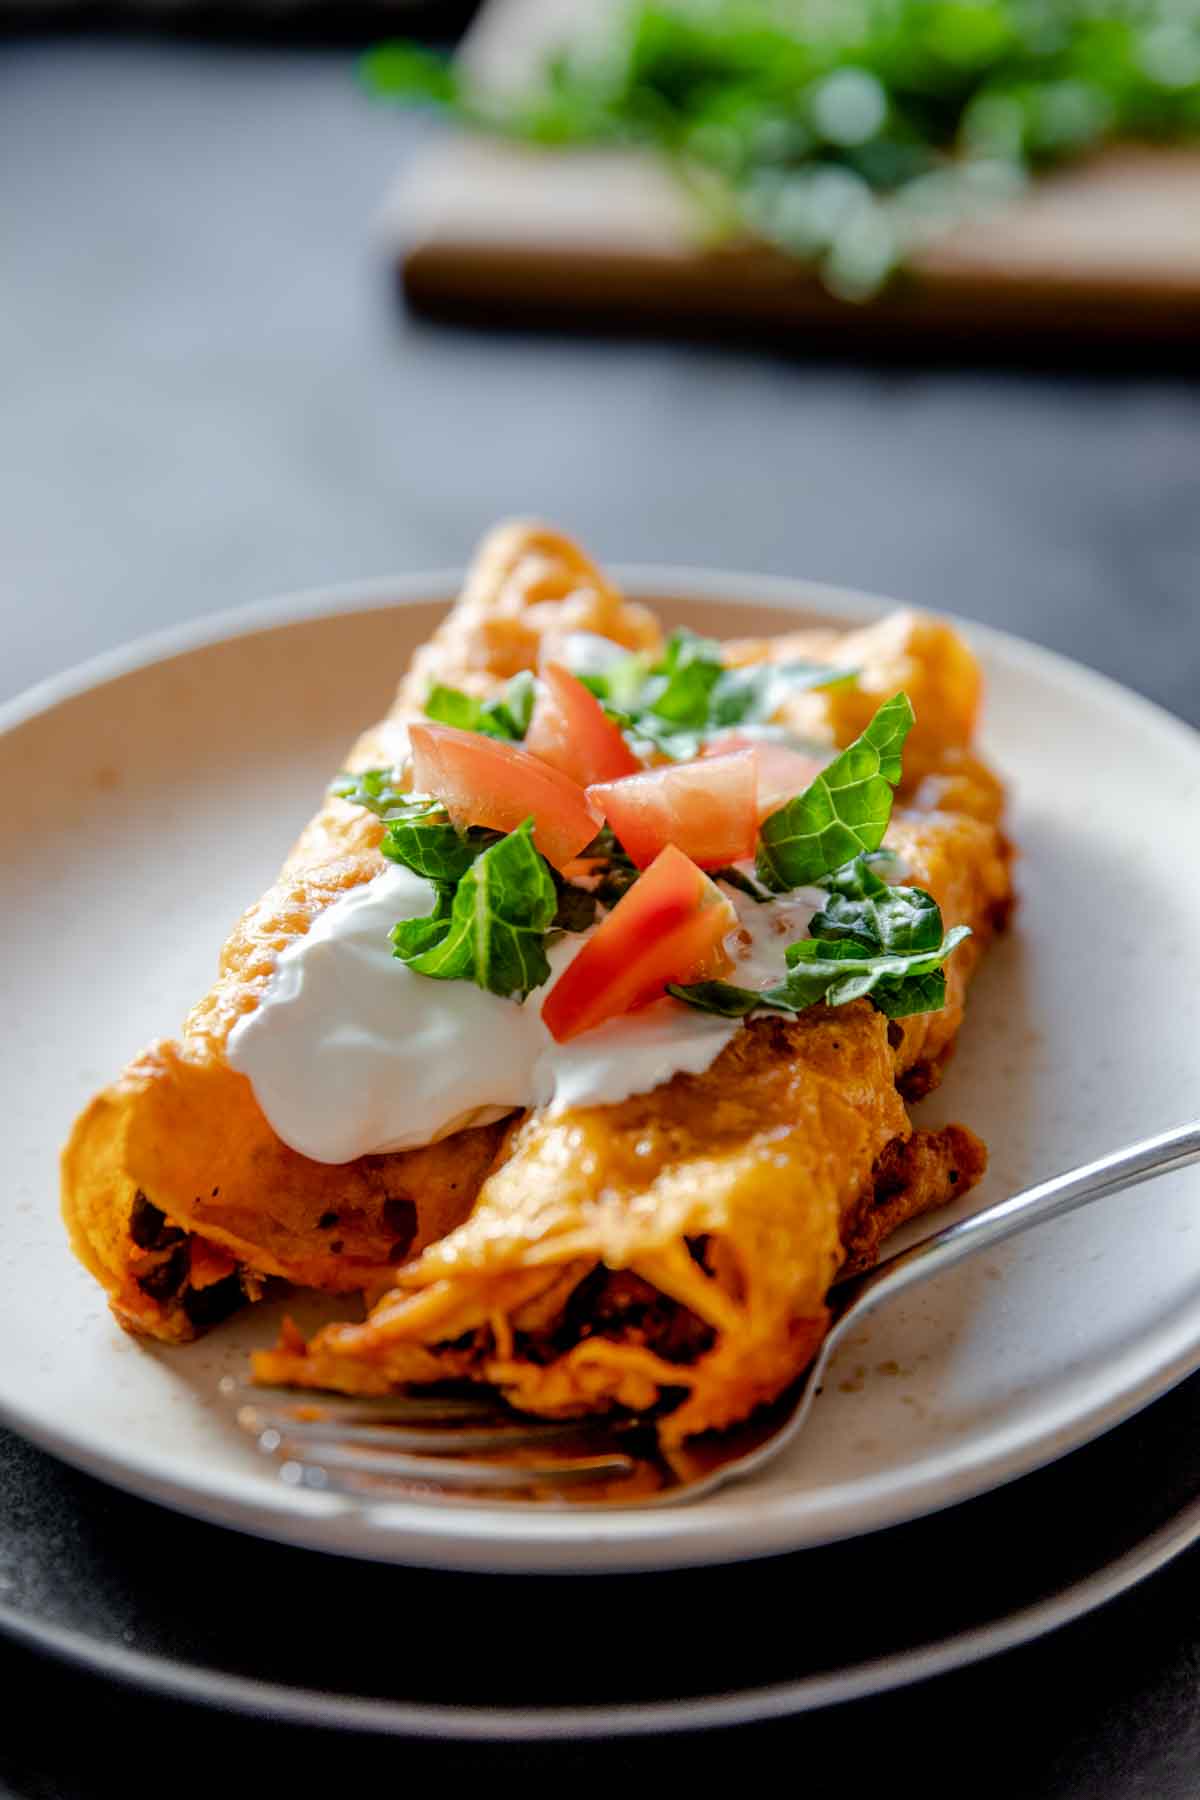 Gluten Free Chicken Enchiladas - Includes Enchilada Sauce Recipe!